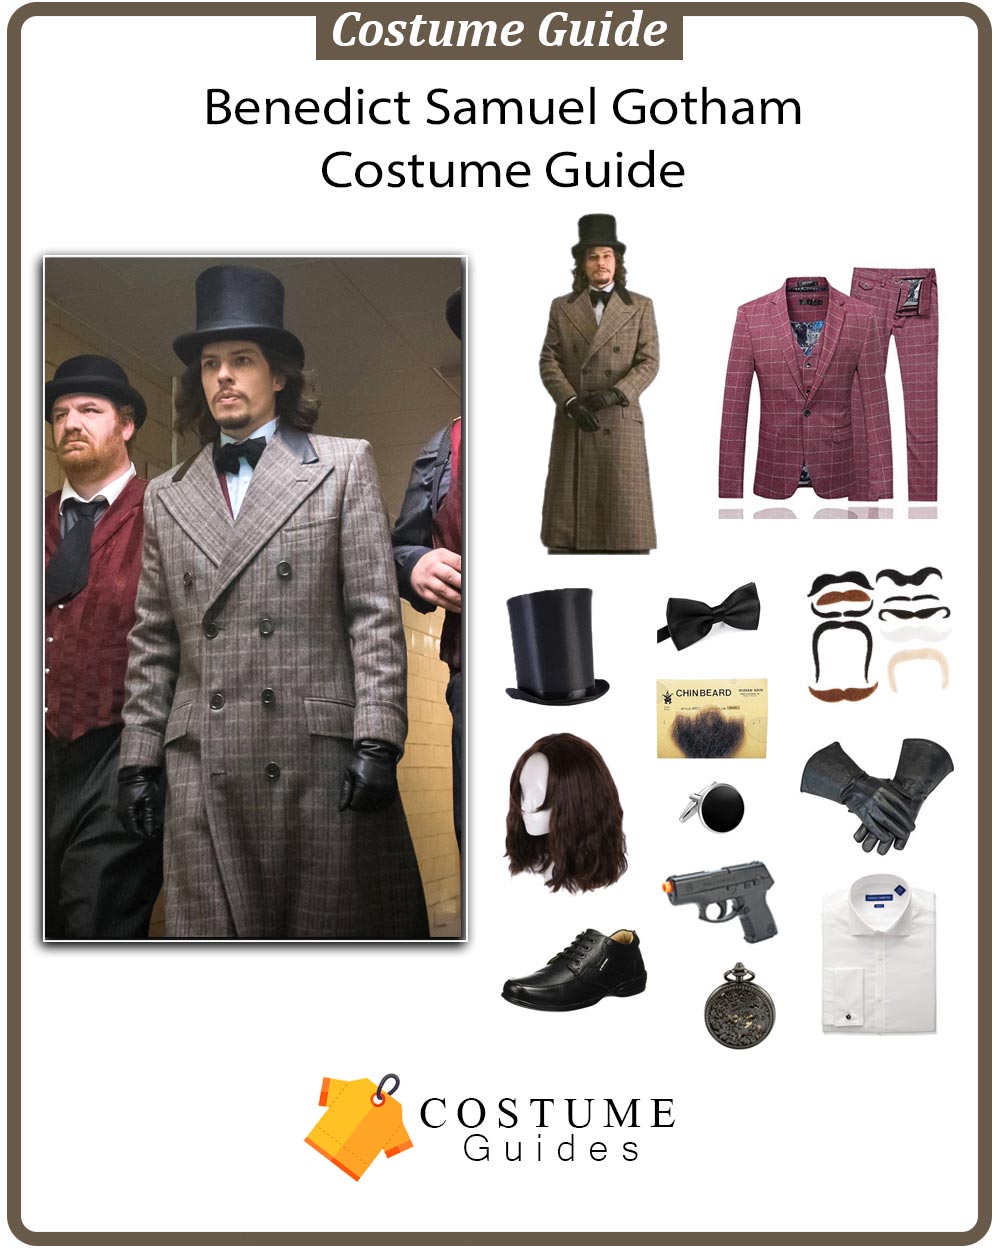 Benedict Samuel Gotham Costume Guide